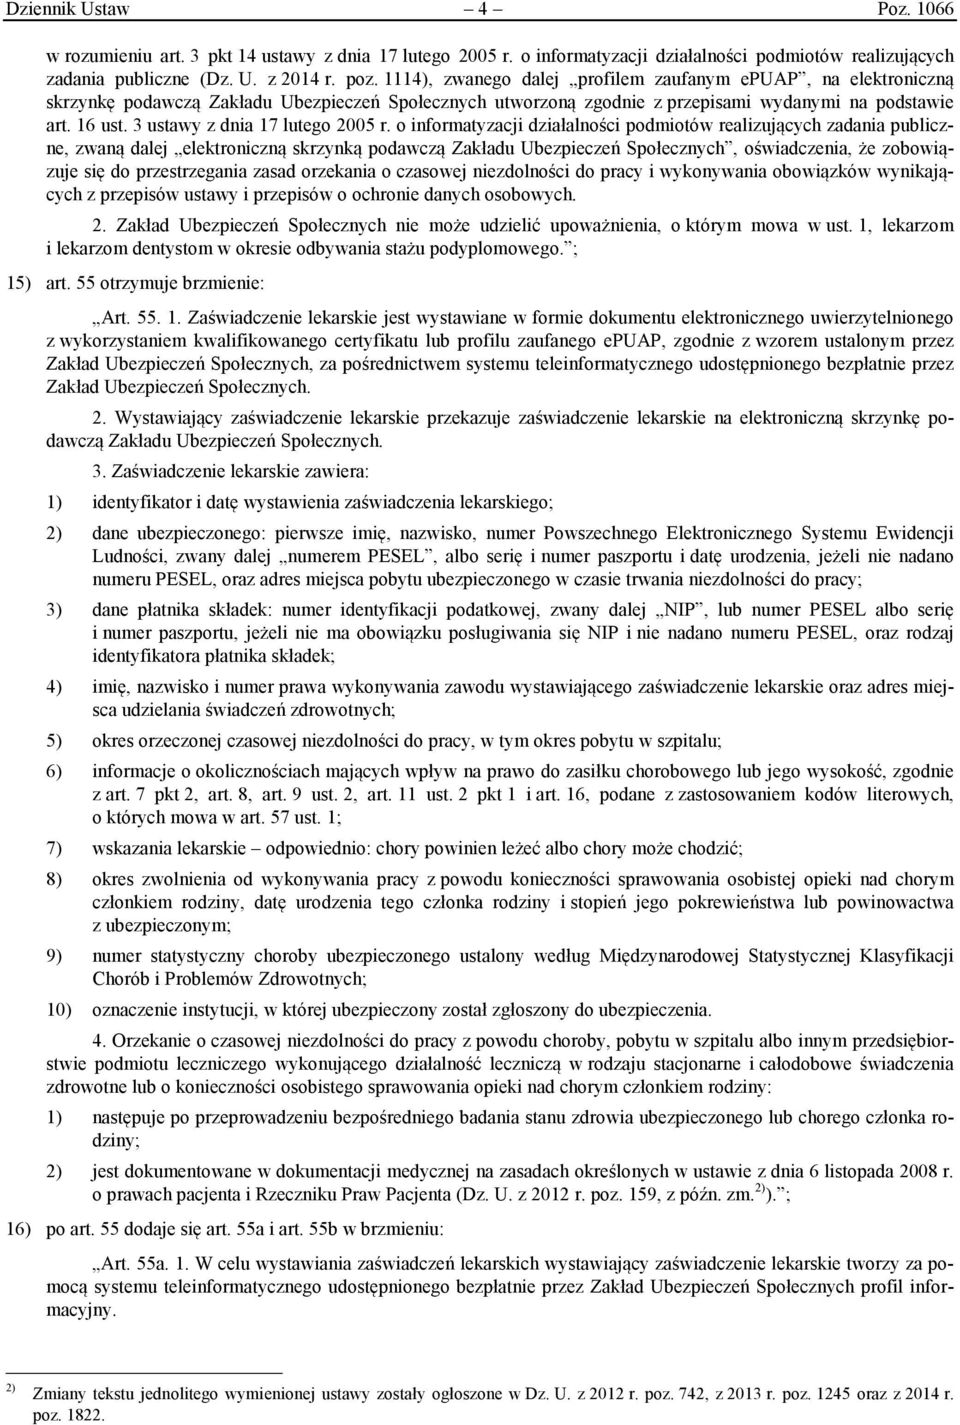 3 ustawy z dnia 17 lutego 2005 r.